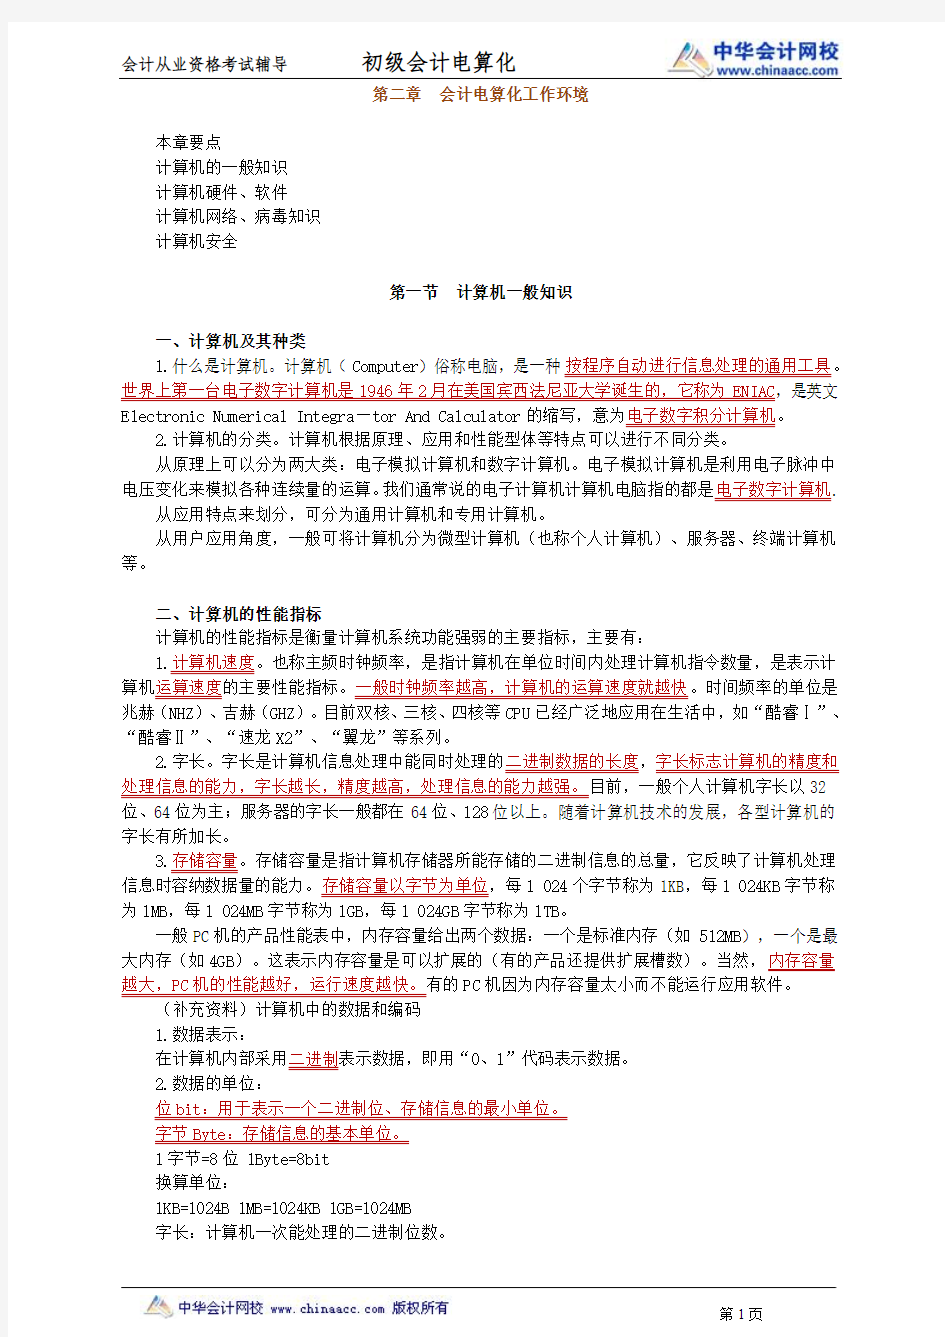 中华会计网校2013年河北会计从业考试《会计电算化》基础班讲义第二章